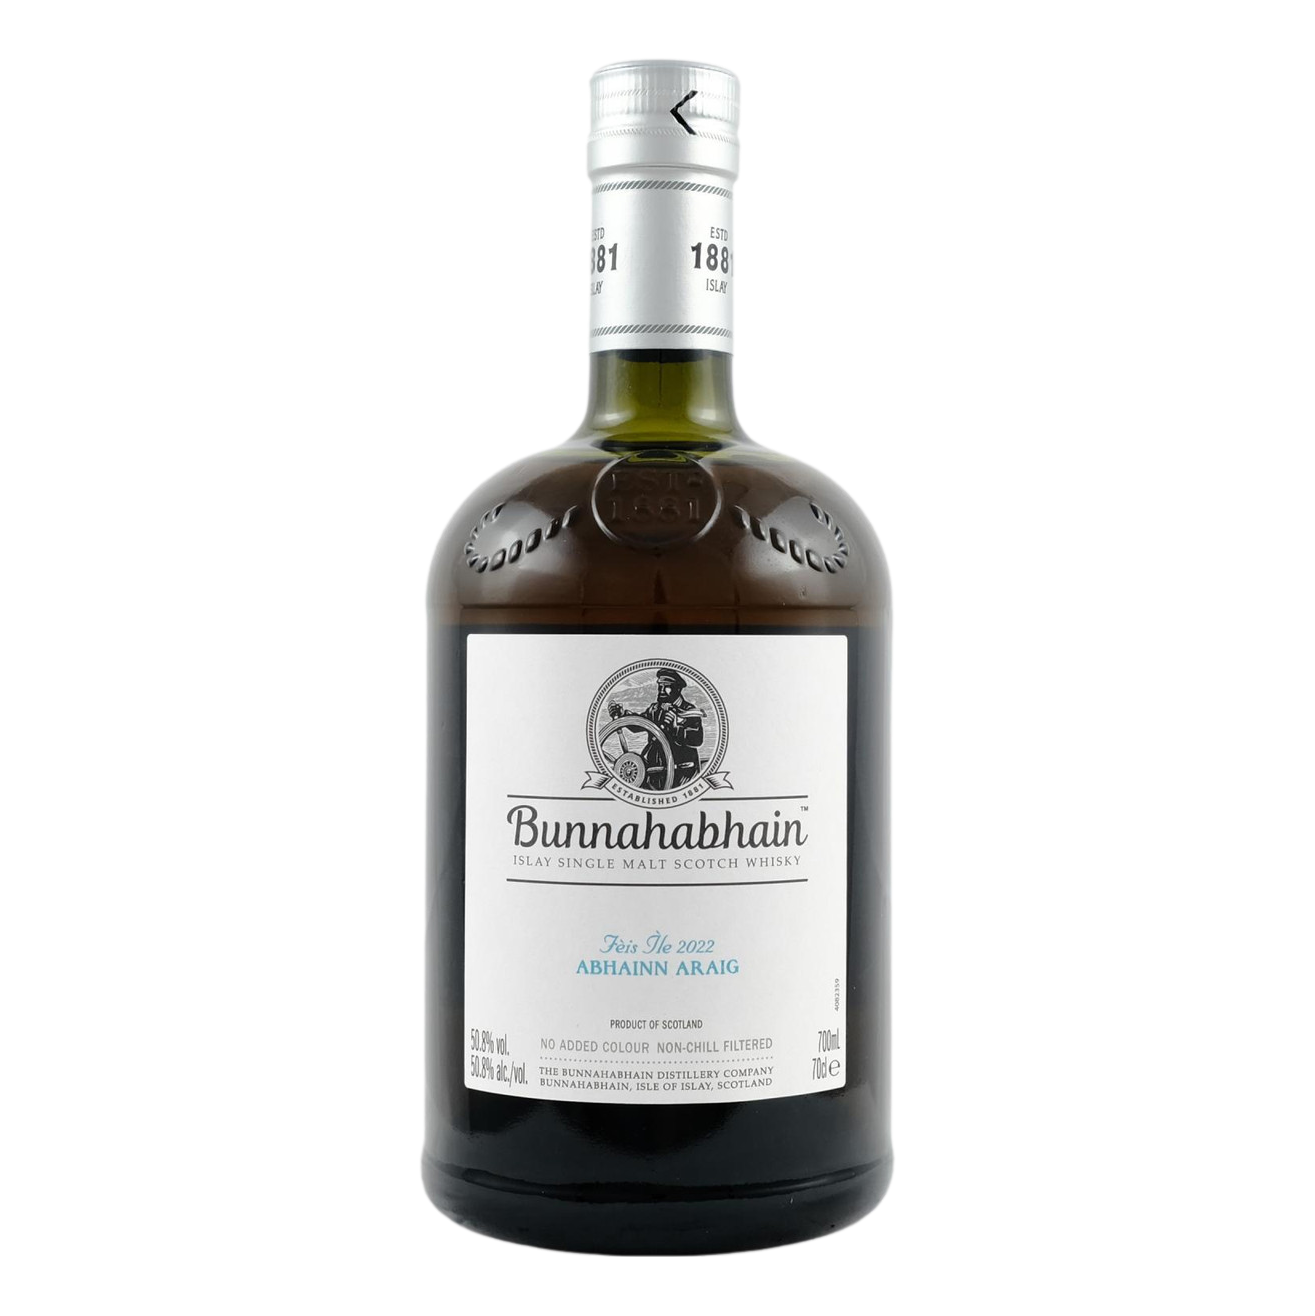 Bunnahabhain Feis Ile Abhainn Araig Single Malt Scotch Whisky 700ml